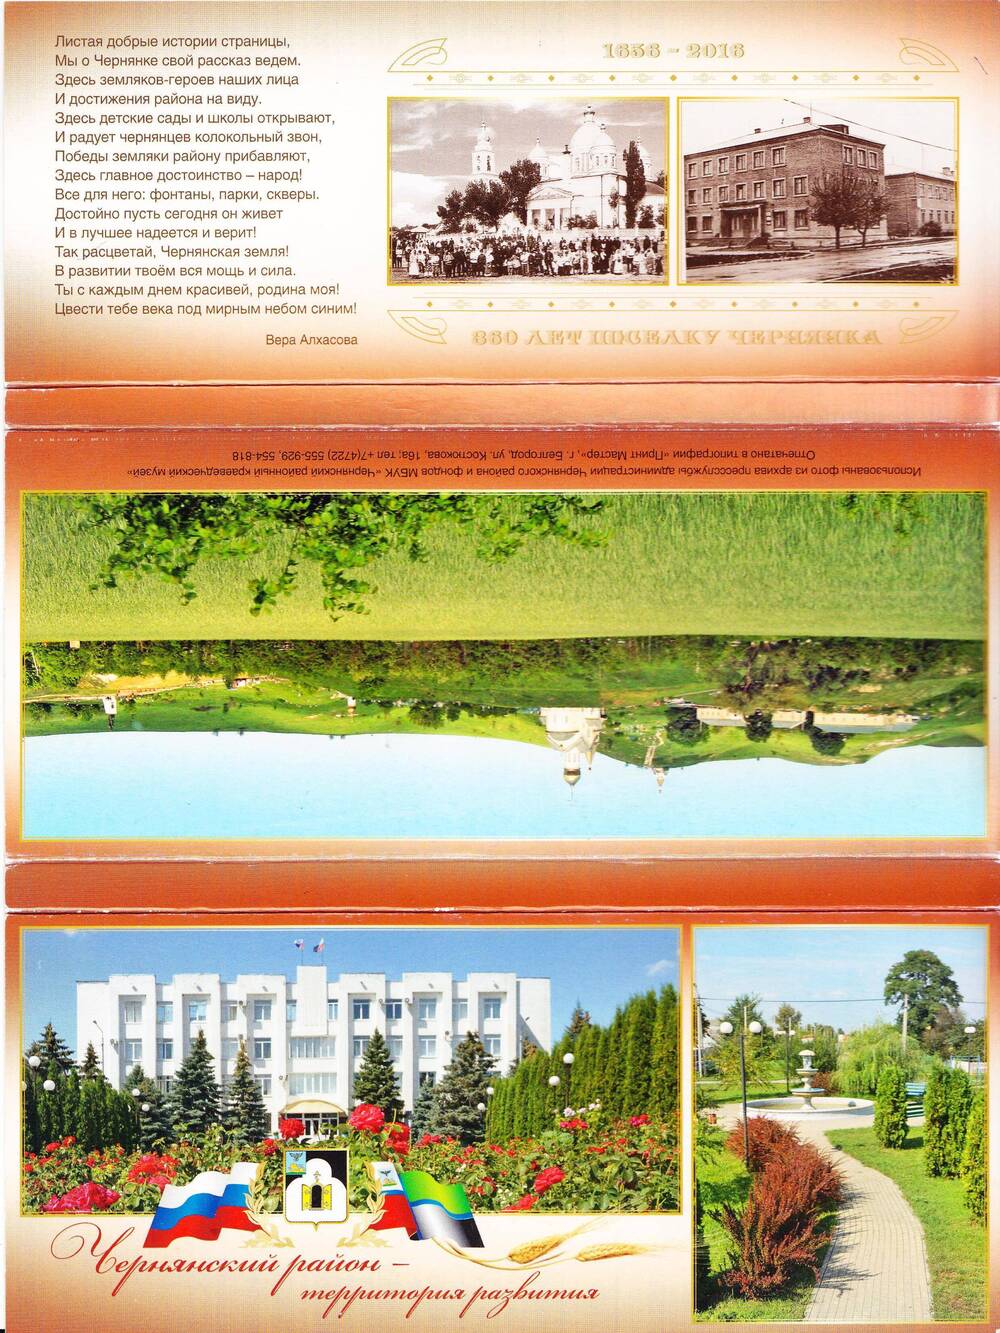 Обложка от набора открыток «Чернянский район – территория развития».